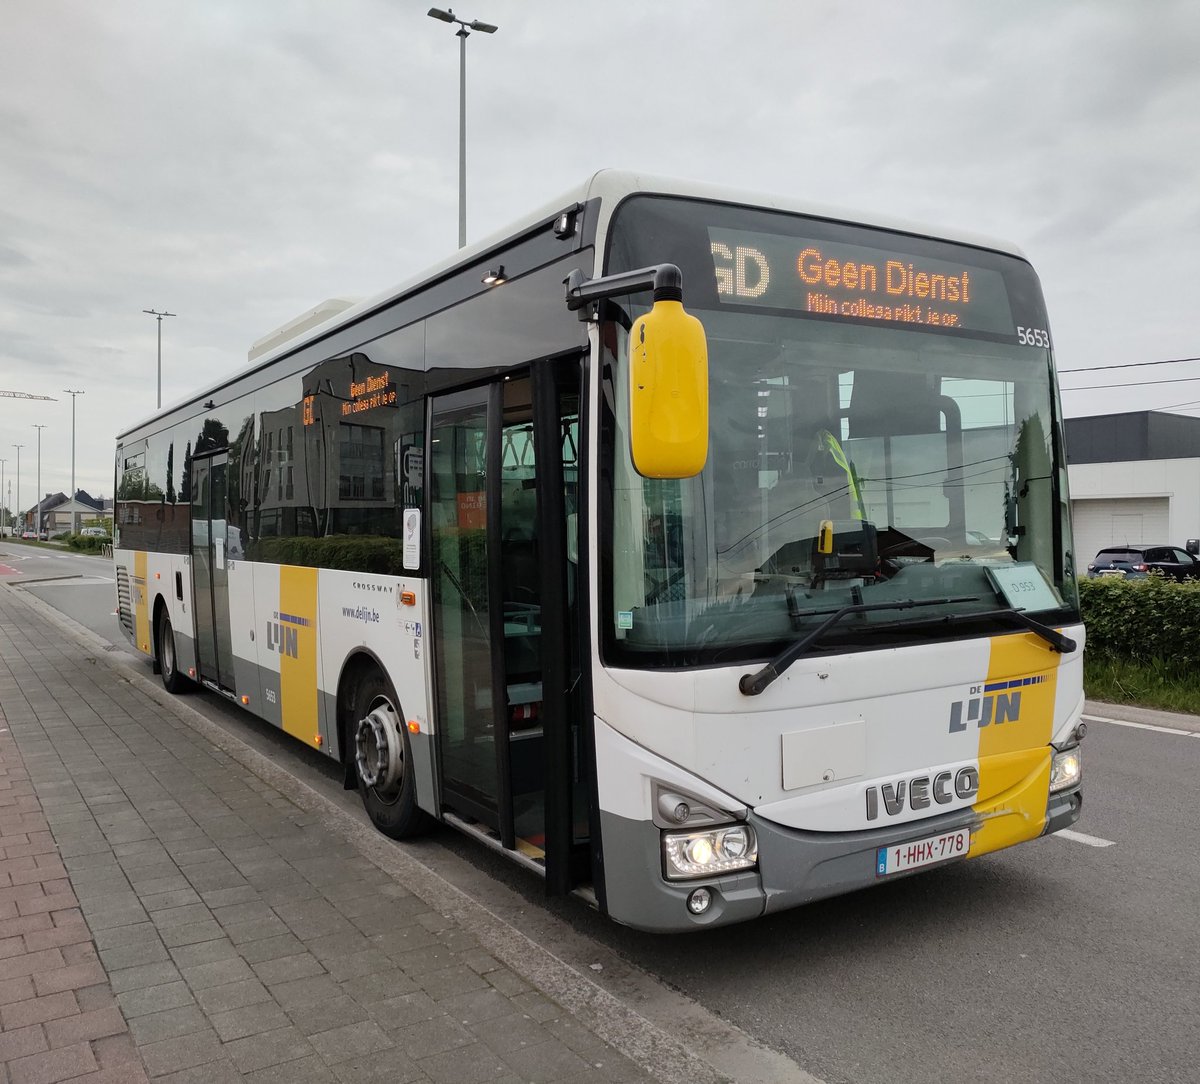 Goedemorgen 🚍🙂
#publictransport #openbaarvervoer #busdriver #busdriverlife #lovemyjob #happybusdriver #delijn  #MijnLijnAltijdInBeweging #beweegmeenaarminderco2